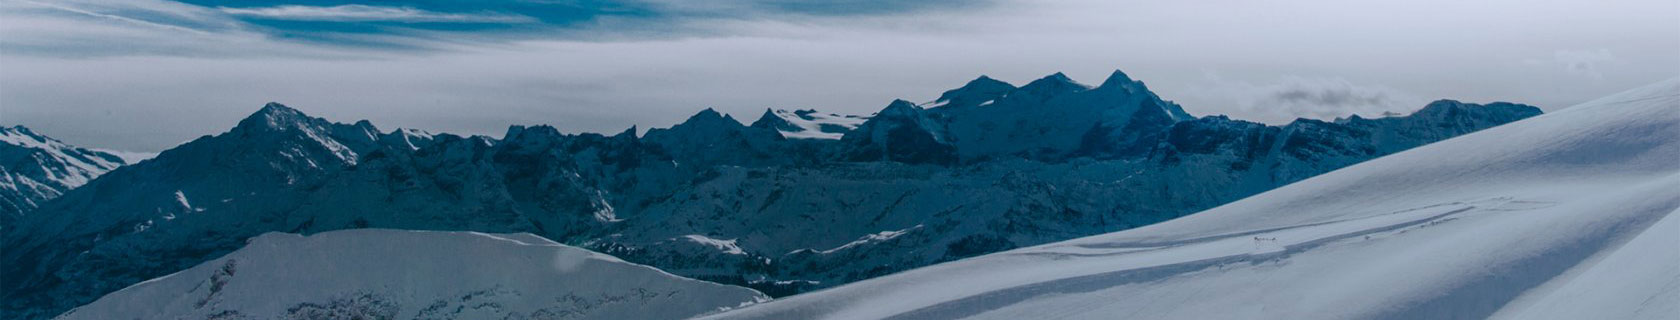 Комплект коньков лыжи SNOWRIDER PRO/ PRO-SE/ WENDIGO